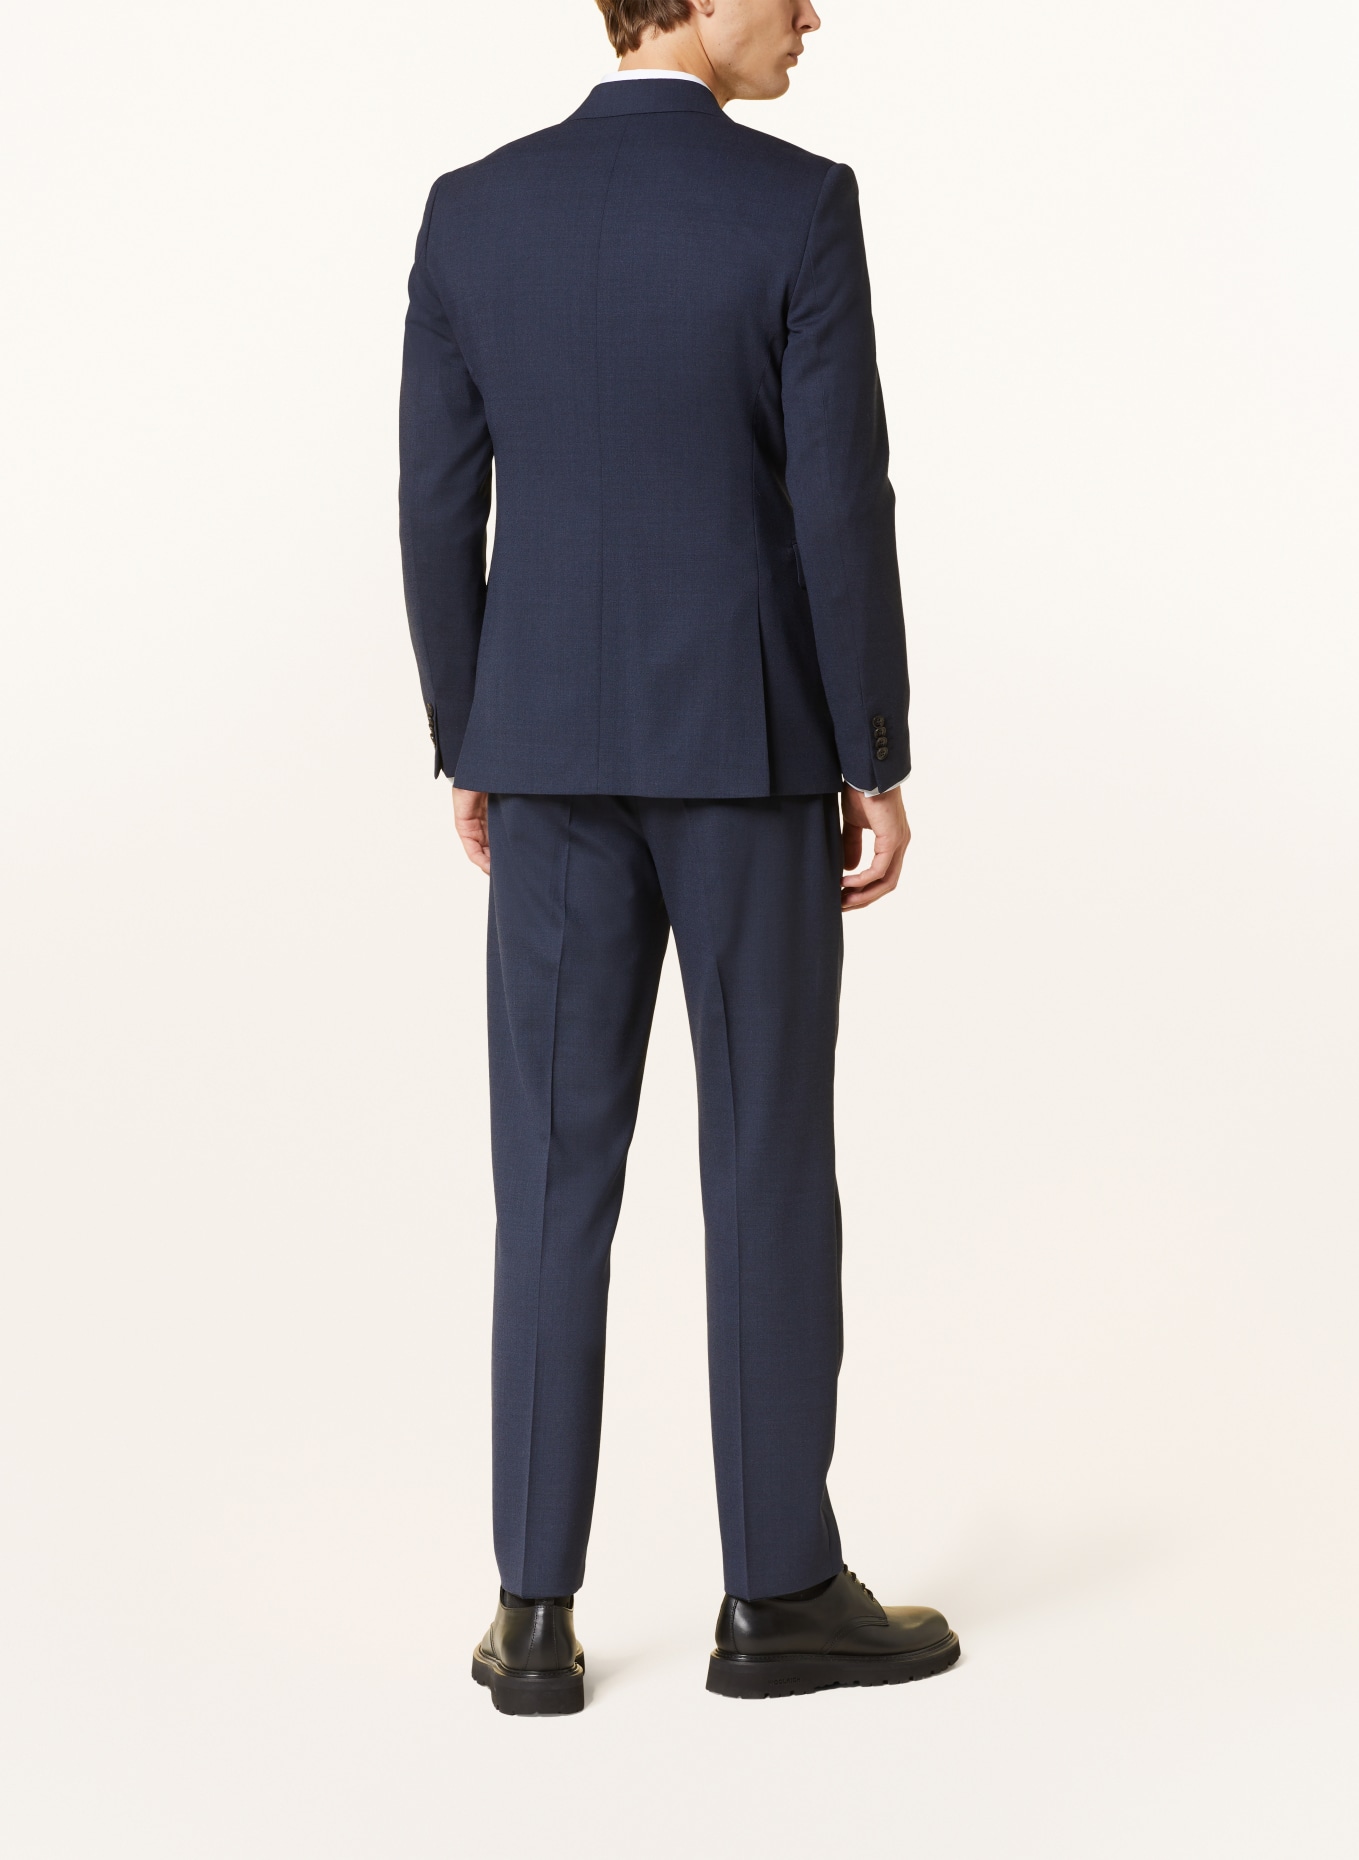 TIGER OF SWEDEN Suit jacket JULIEN regular fit, Color: 231 Dusty blue (Image 3)